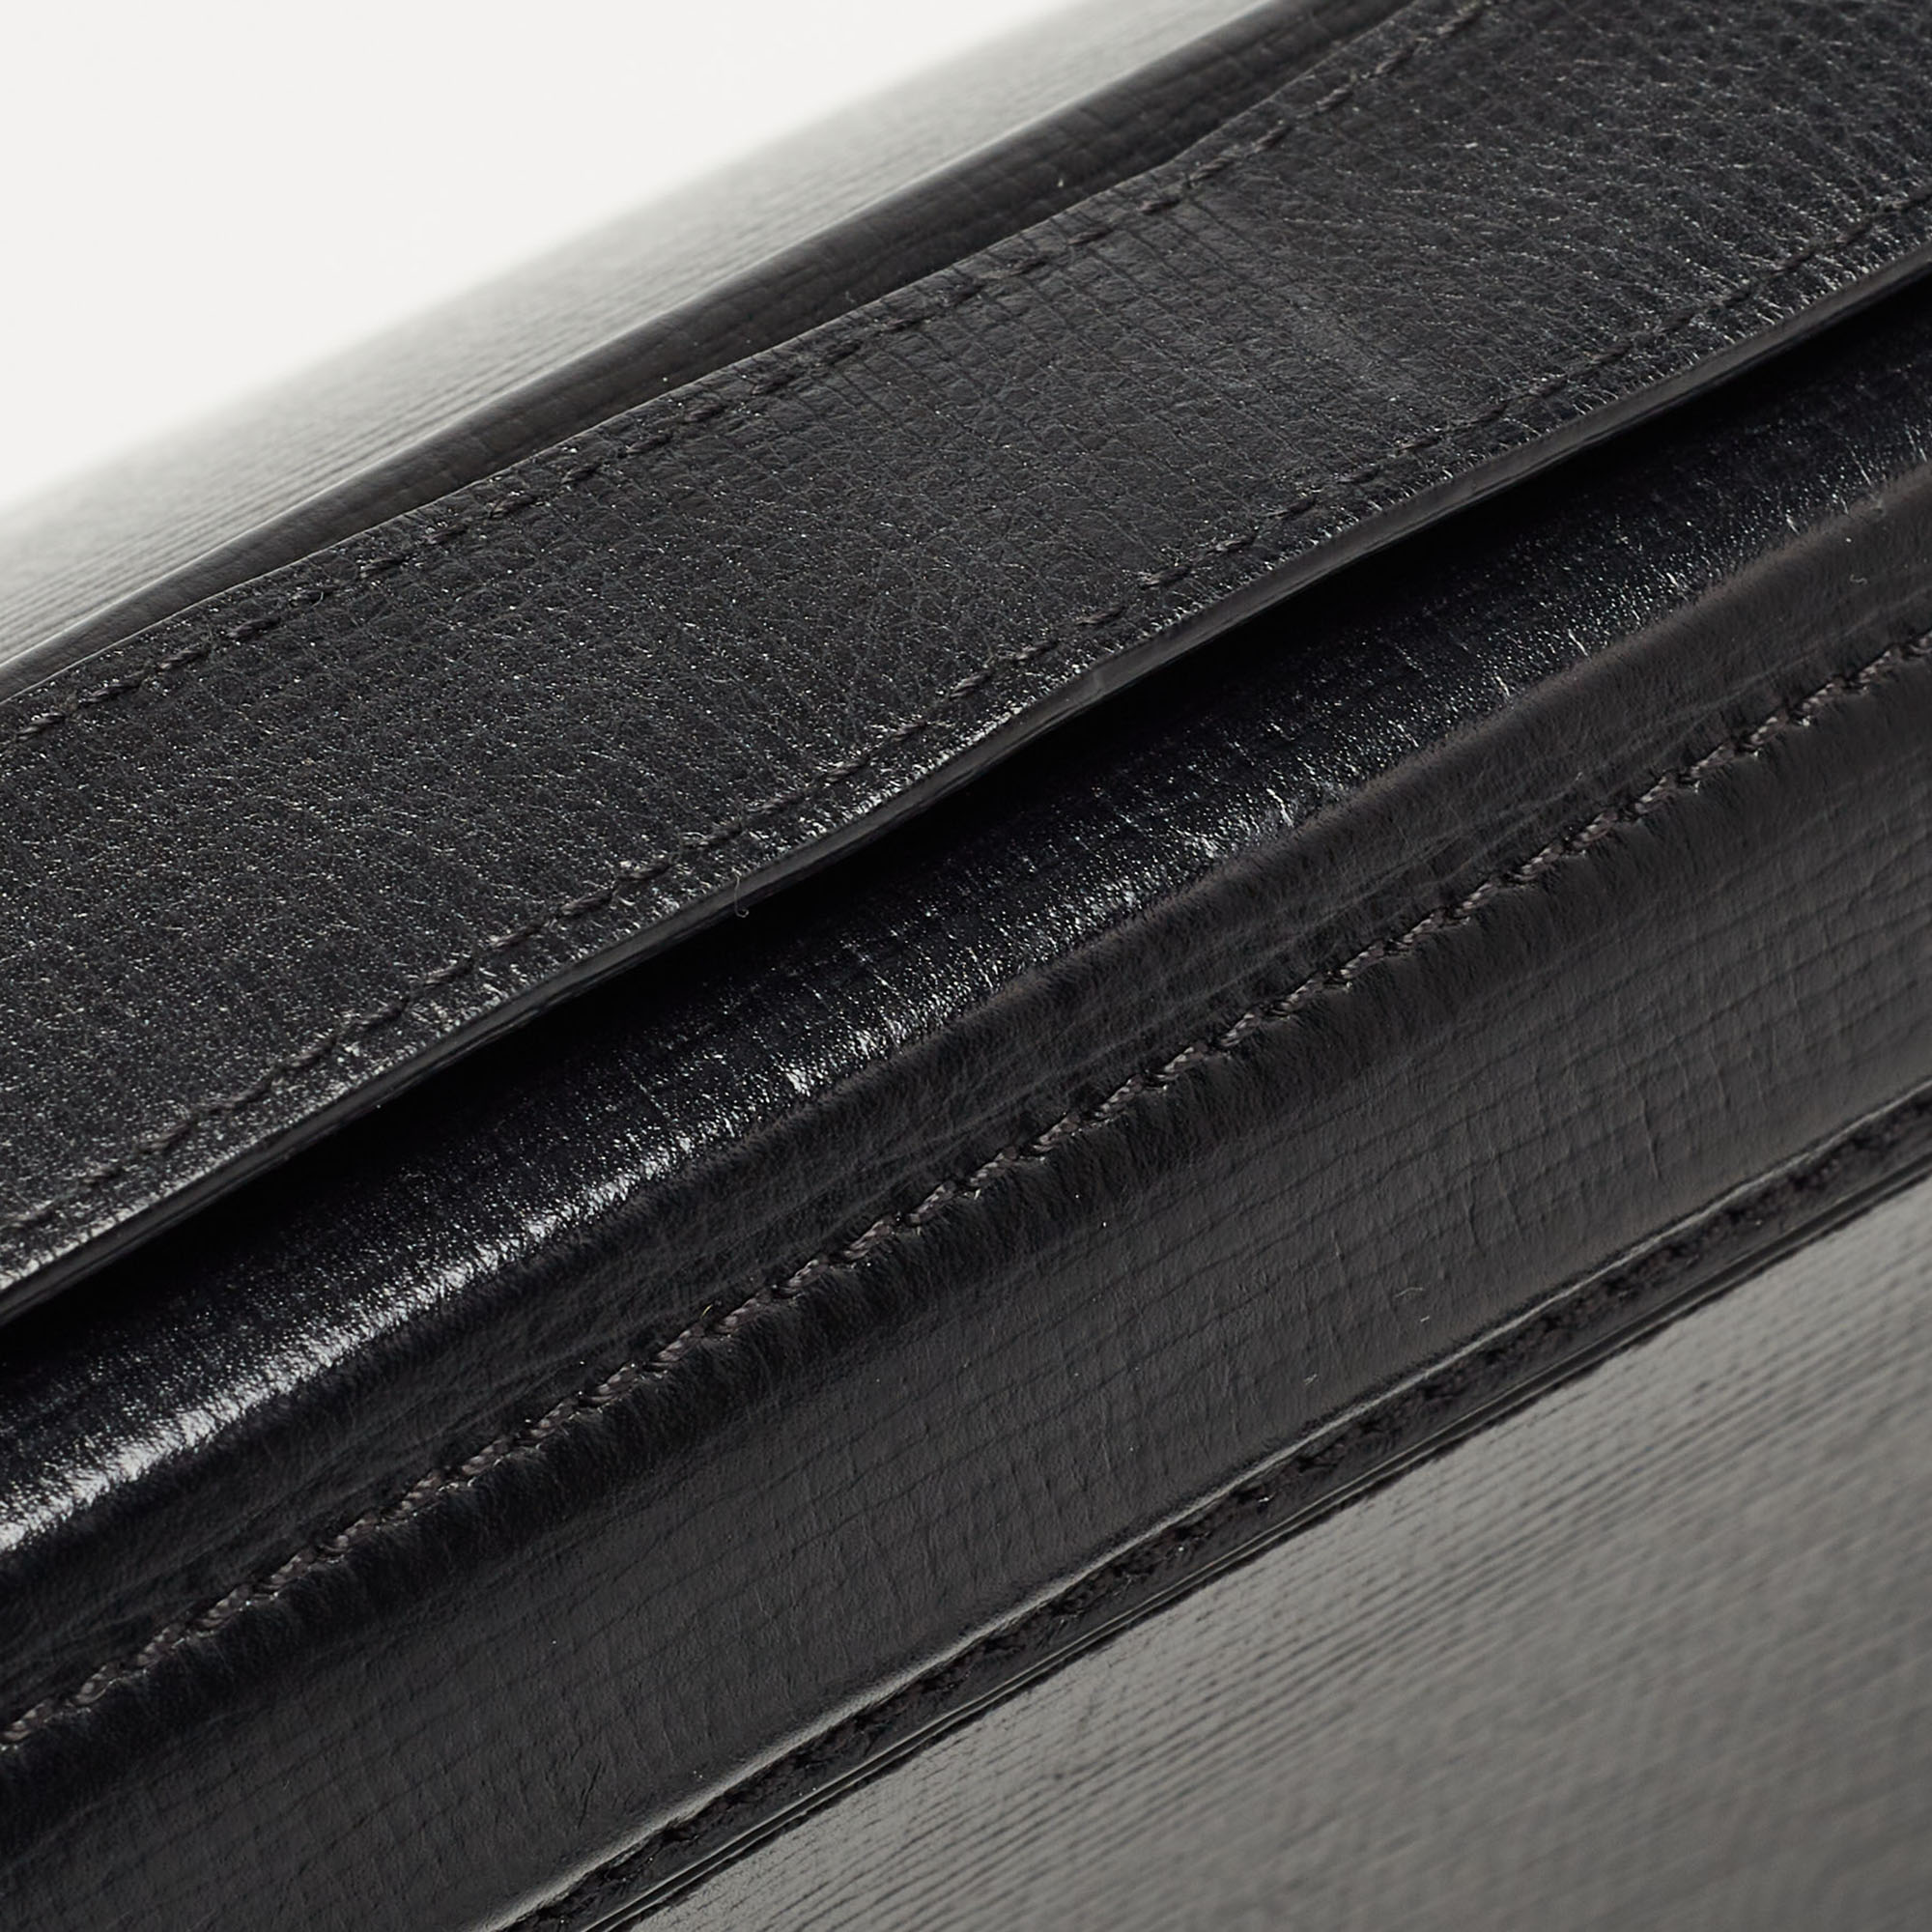 Givenchy Black Leather Pandora Box Shoulder Bag